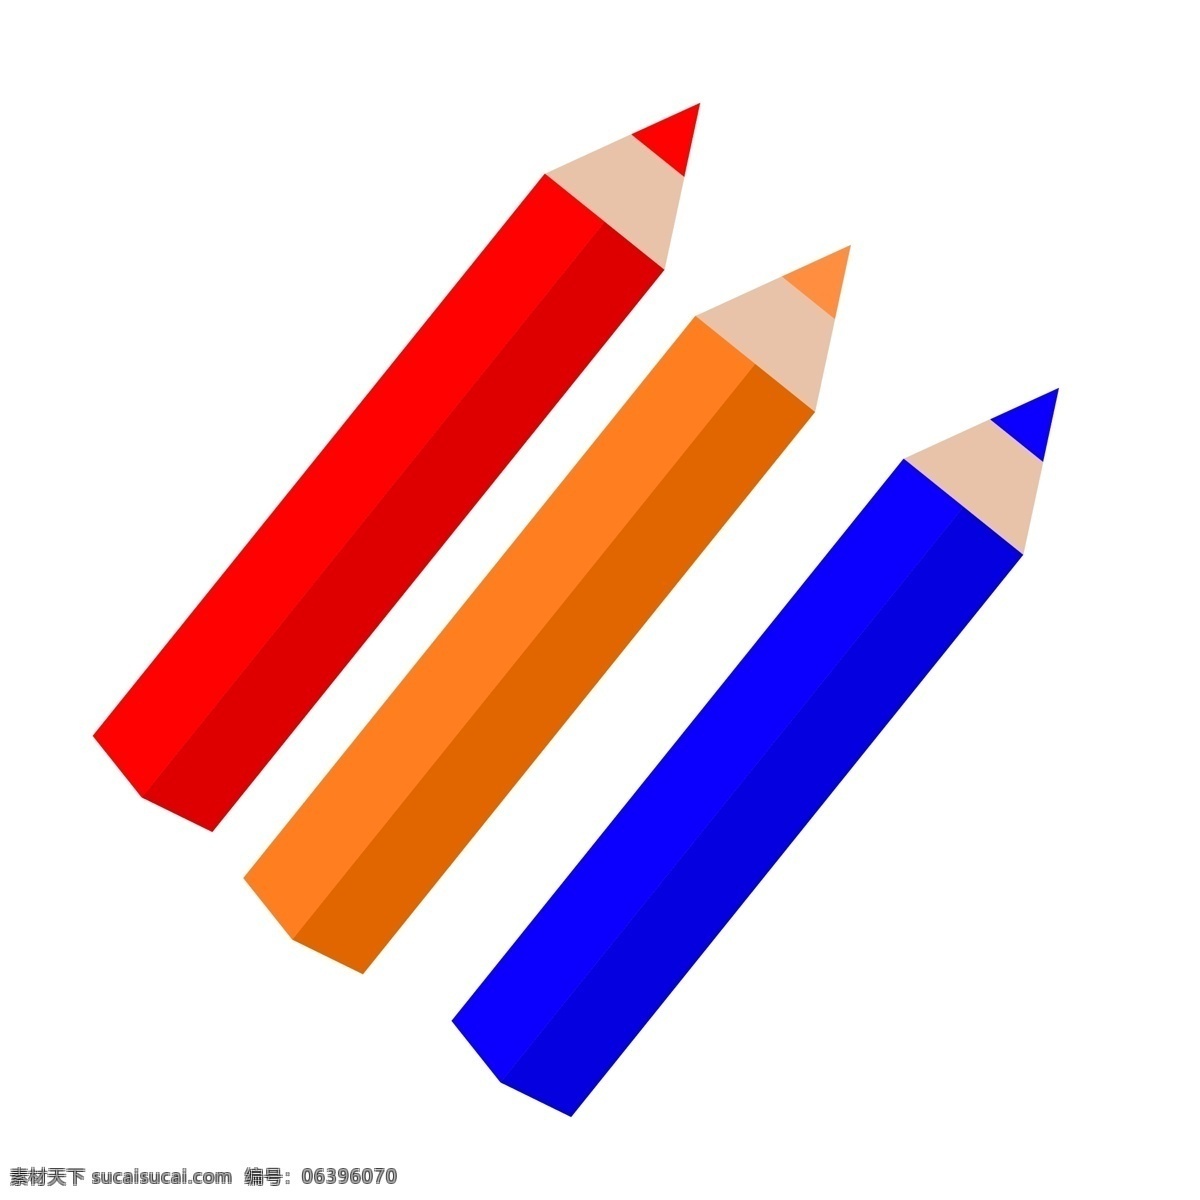 彩色 铅笔 装饰 插画 彩色的铅笔 漂亮的铅笔 三个铅笔 铅笔装饰 铅笔插画 立体铅笔 办公铅笔